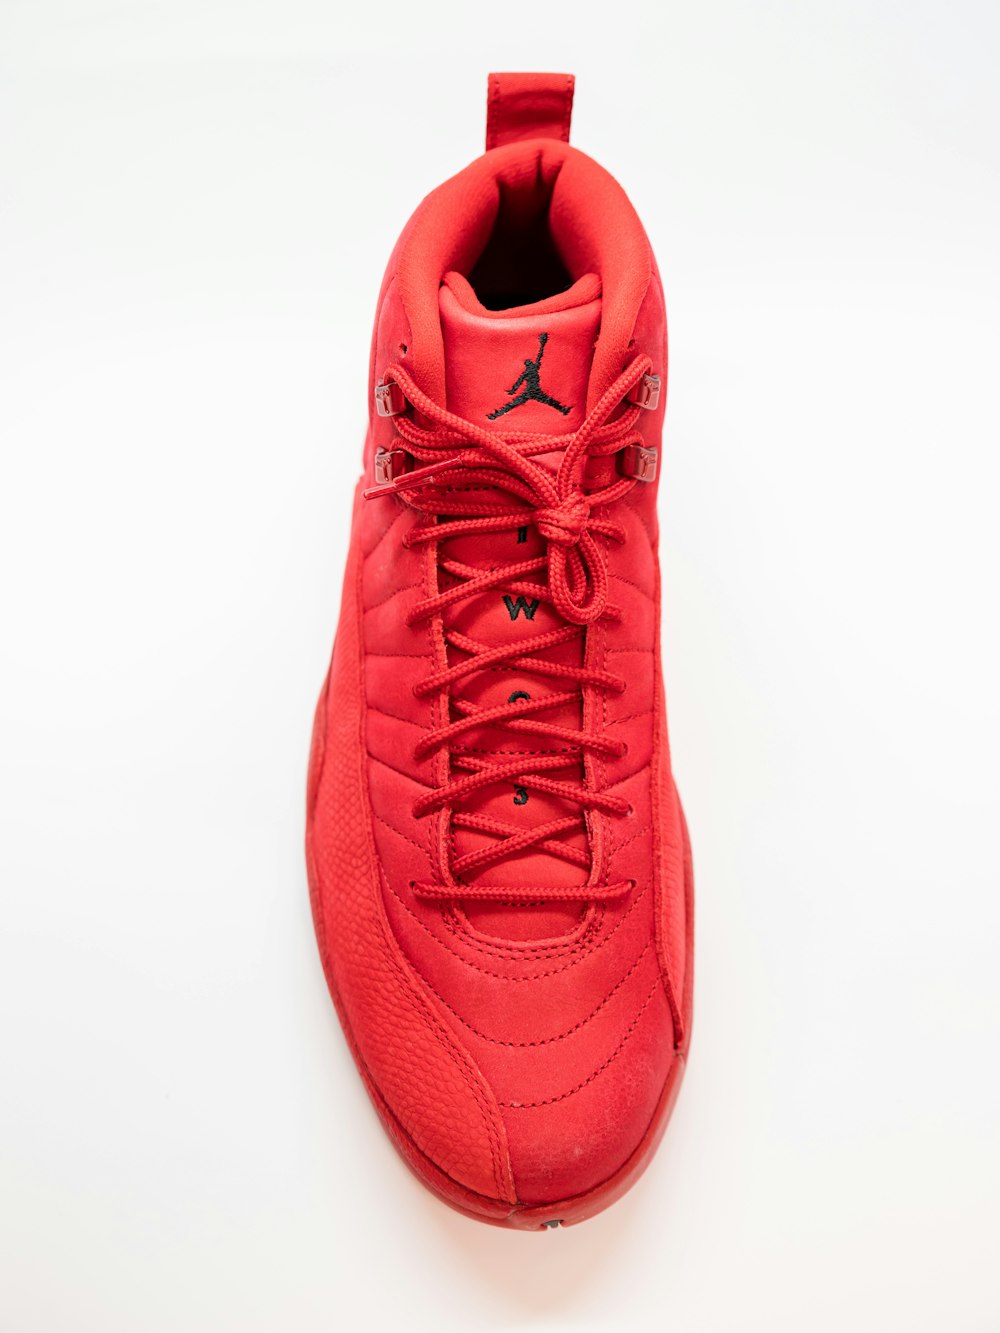 unpaired red Air Jordan 12 shoe